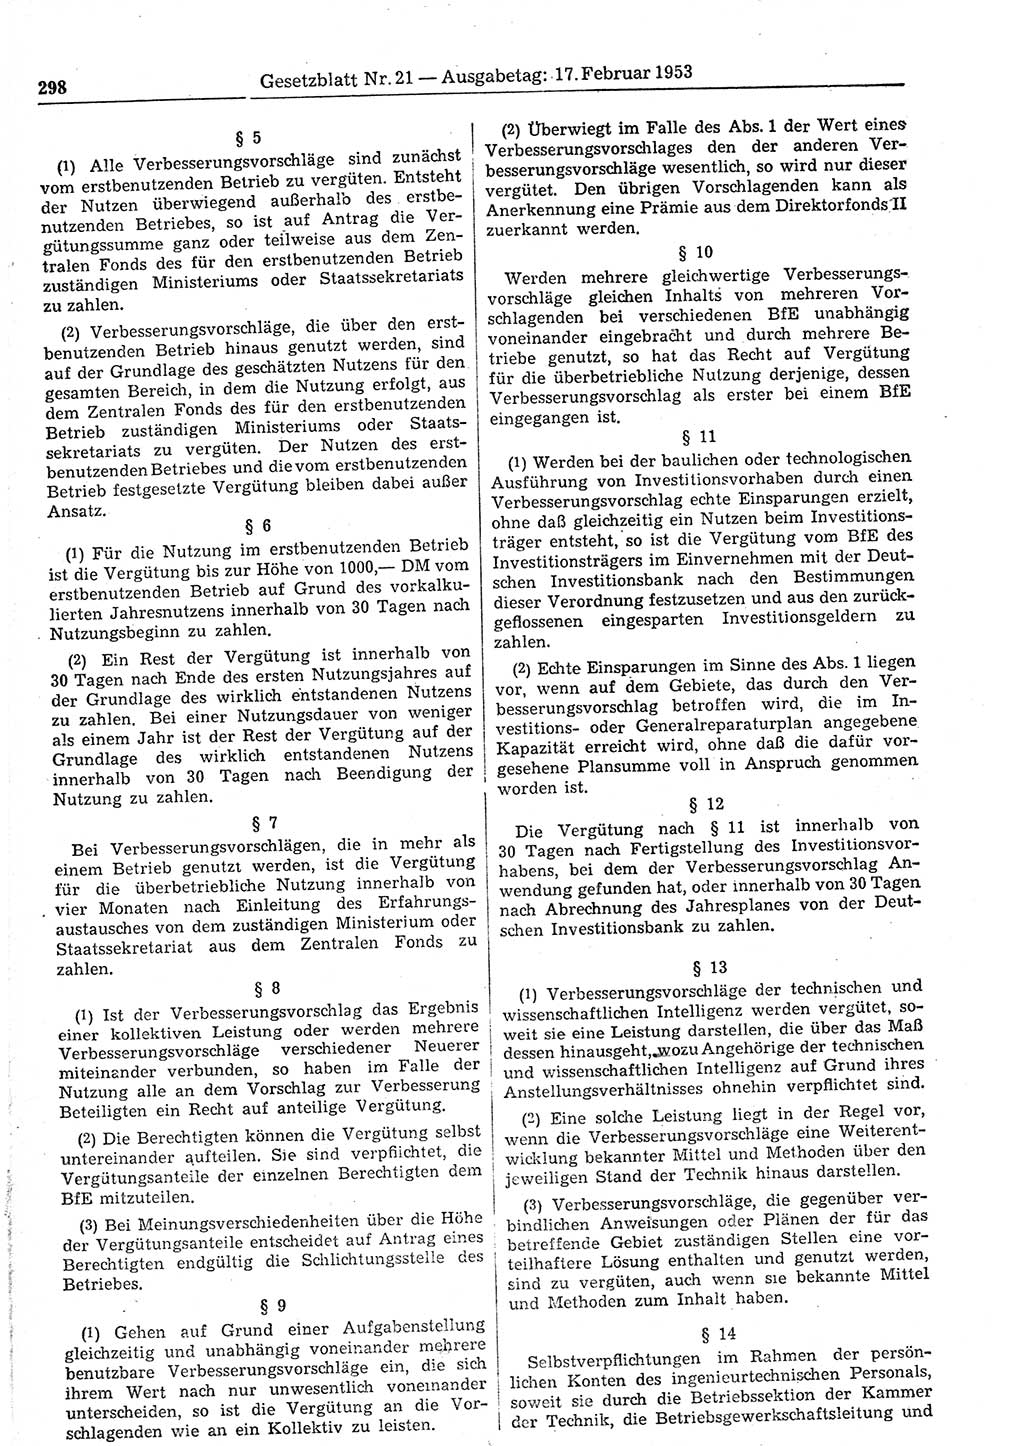 Gesetzblatt (GBl.) der Deutschen Demokratischen Republik (DDR) 1953, Seite 298 (GBl. DDR 1953, S. 298)